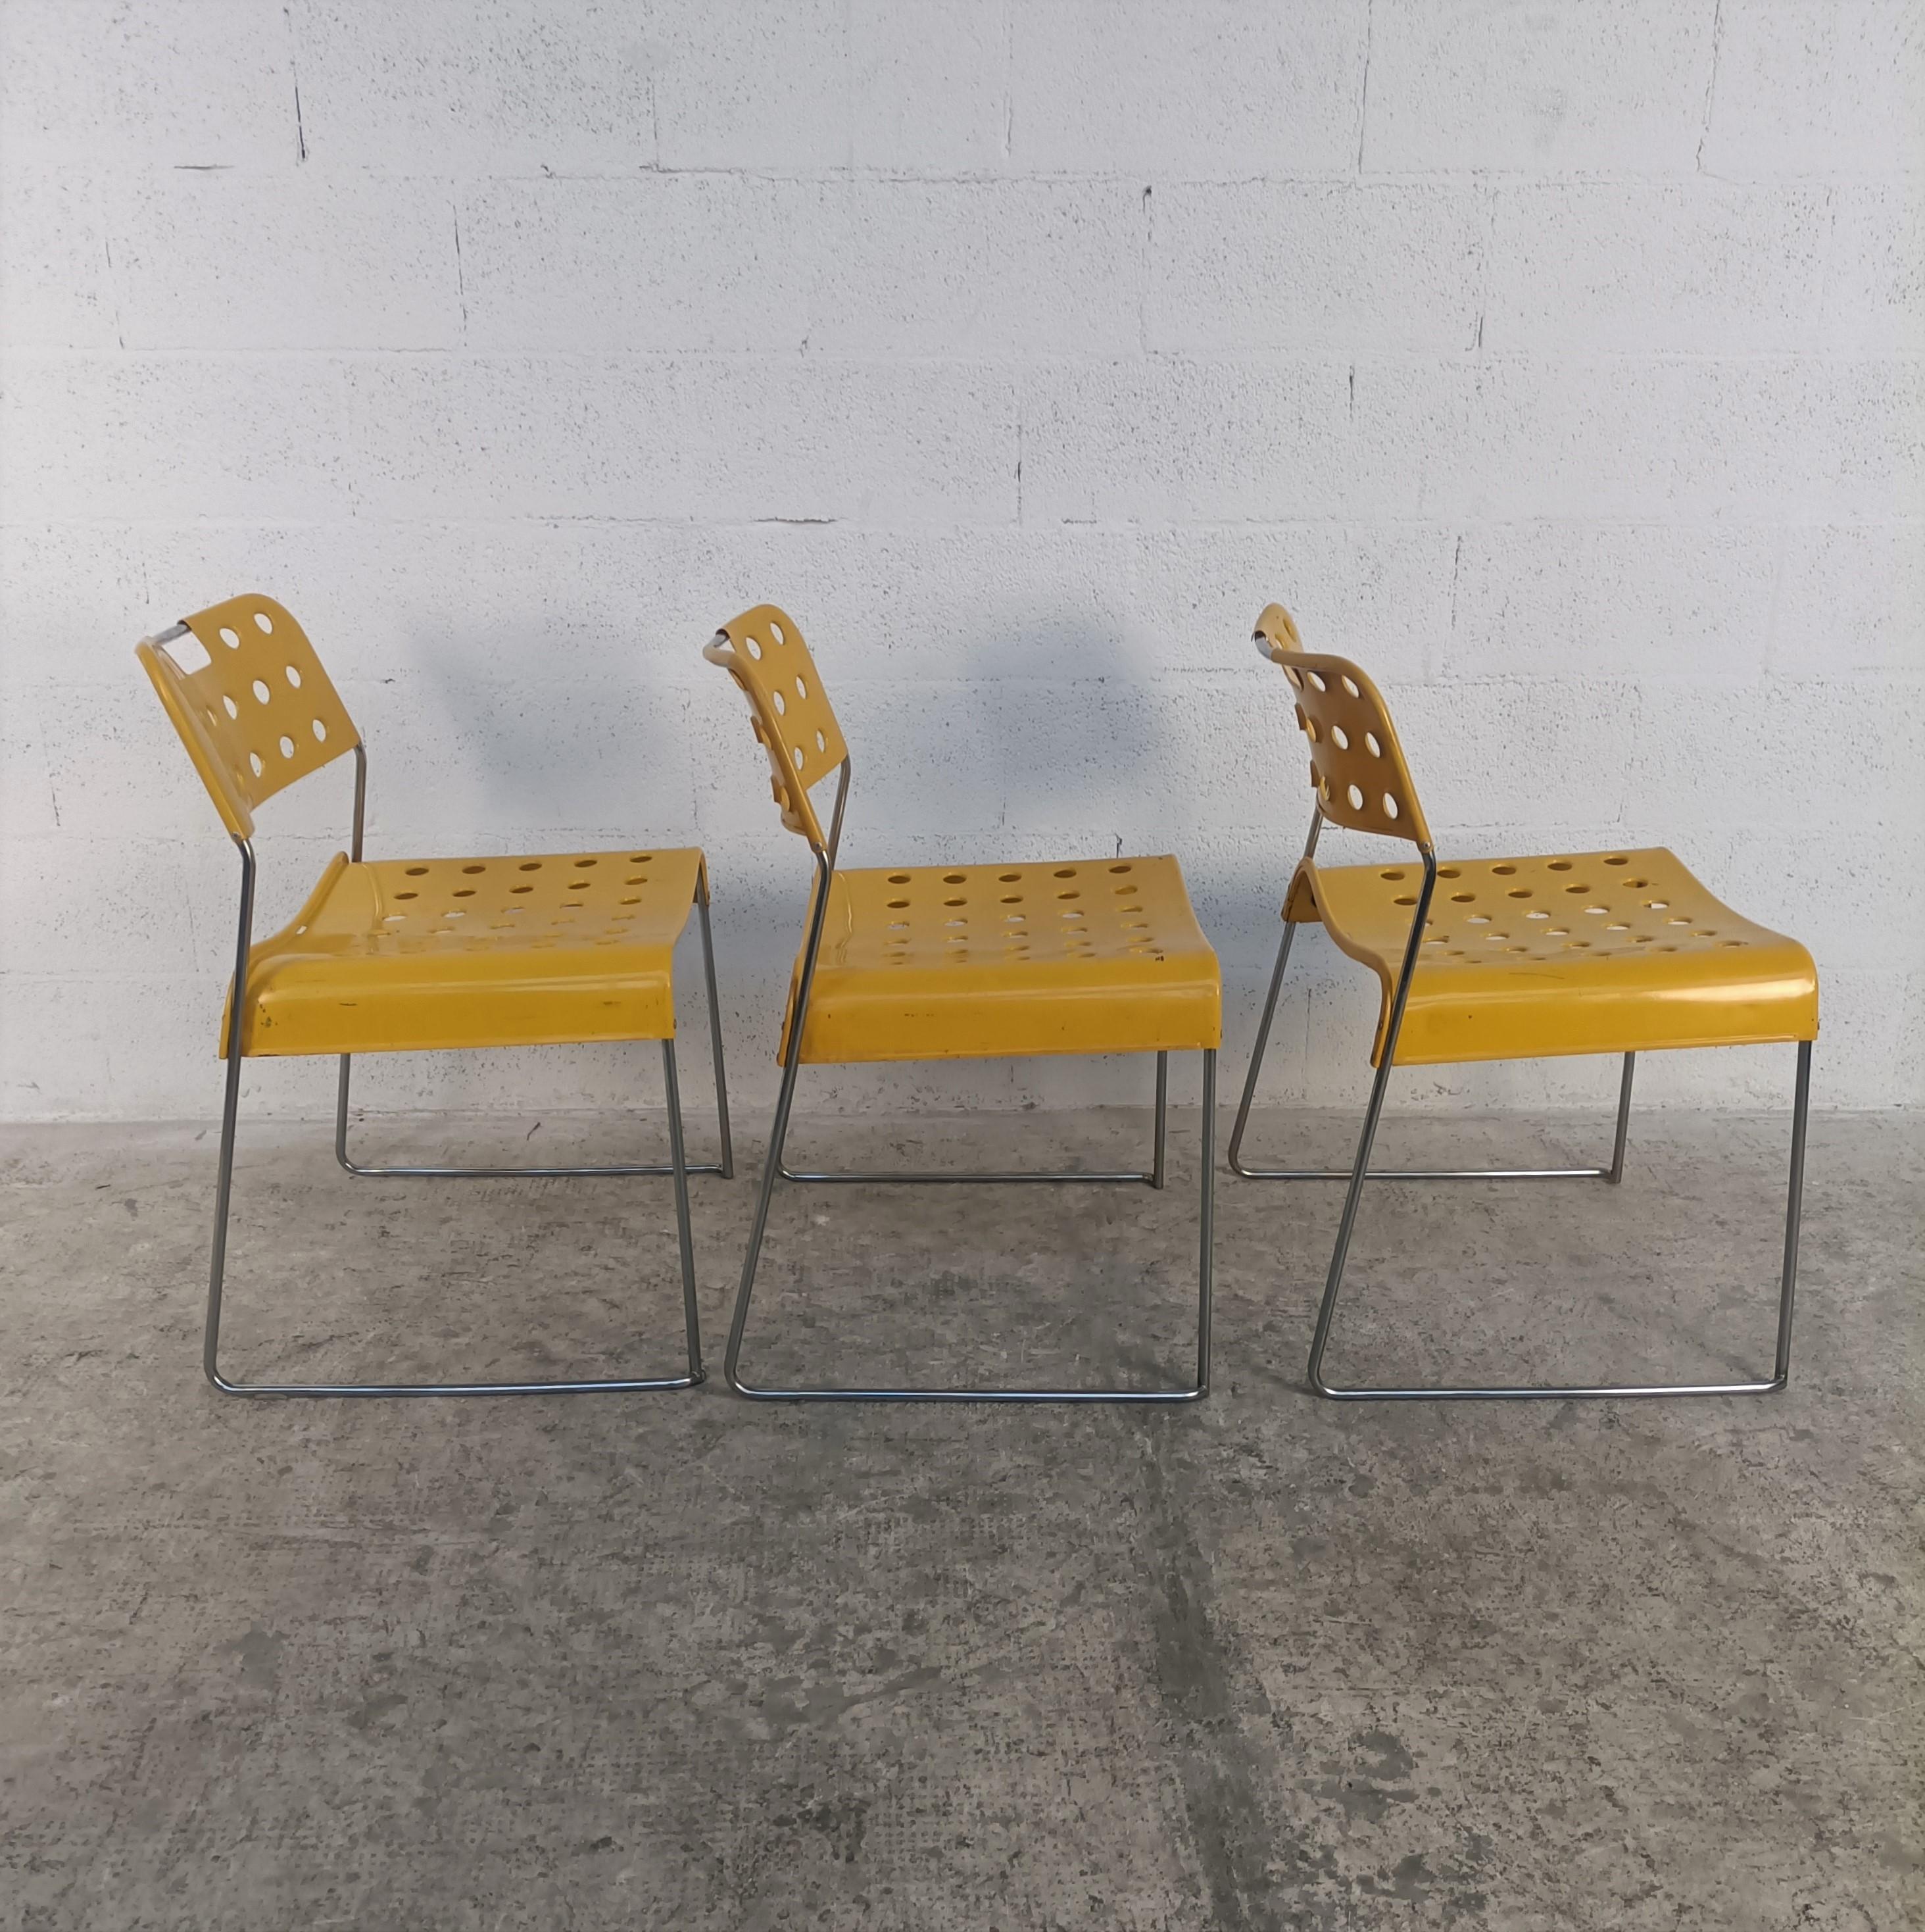 3 Metall Esszimmerstühle Modell Omkstak entworfen von Rodney Kinsman und hergestellt von Bieffeplast 1970er Jahre.
Gestell aus verchromtem Stahlrohr, Sitz und Rückenlehne aus geformtem, mit gelbem Epoxidharz beschichtetem Stahlblech. Die